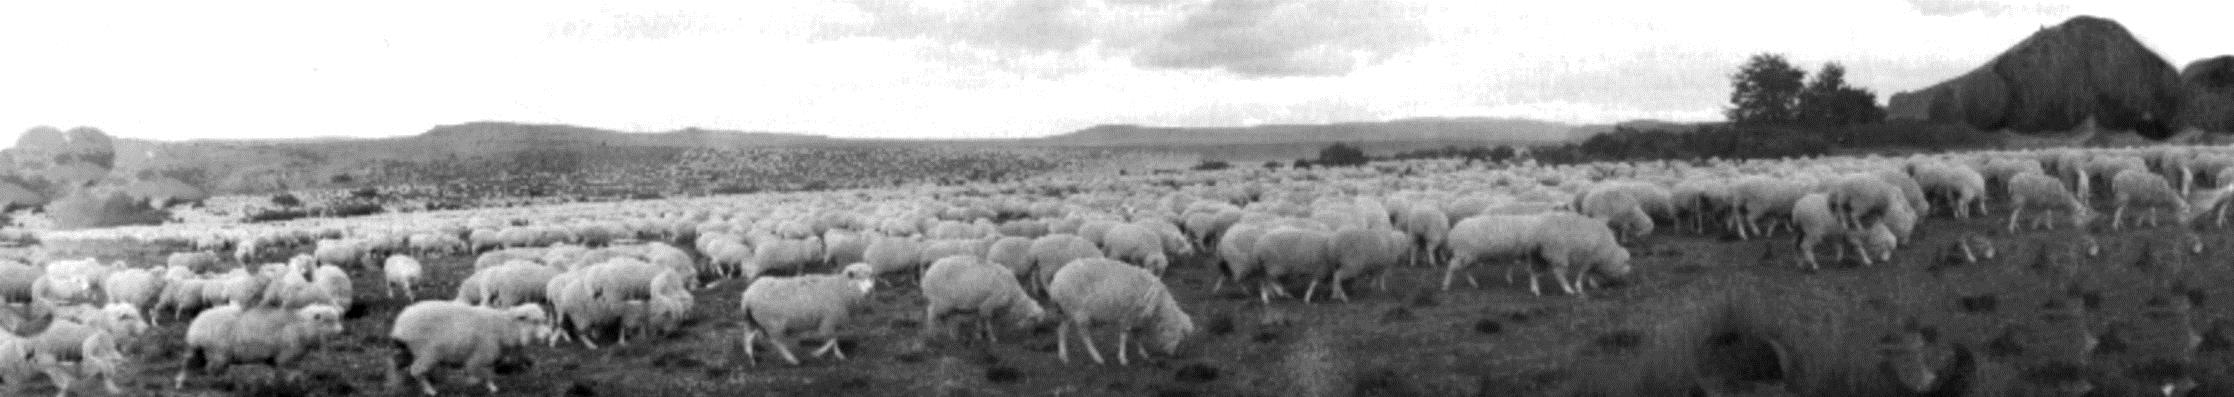 HIDATIDOSIS Zoonosis hiperendémica en la Región de Aysén Contacto estrecho perro-oveja-hombre faenamiento domiciliario con inadecuada eliminación de vísceras